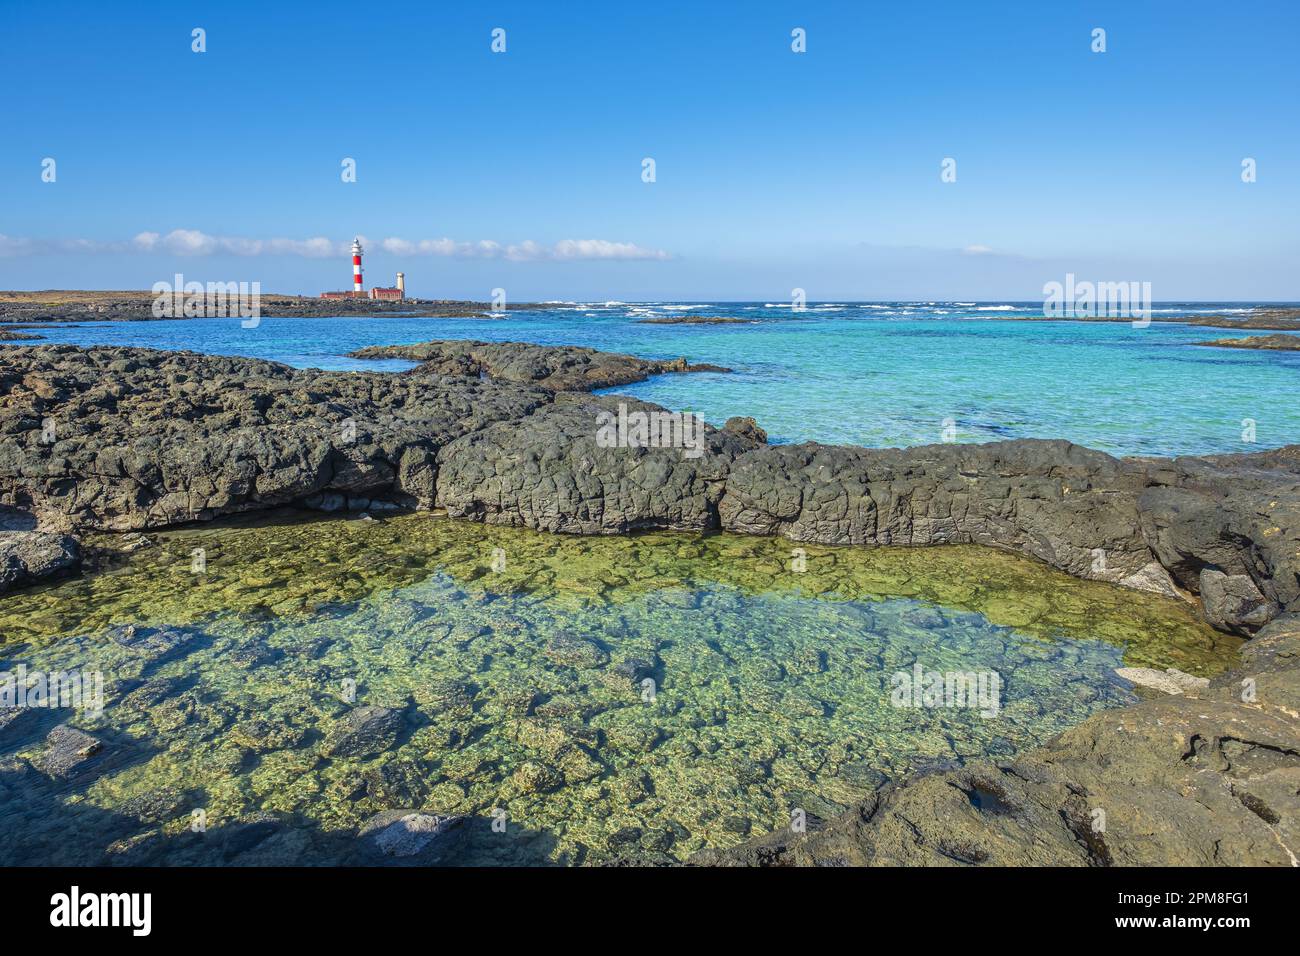 Spagna, Isole Canarie, Fuerteventura, El Cotillo, insenatura e piscine naturali della Caleta del Marrajo, faro di Toston a Punta de la Ballena sullo sfondo Foto Stock